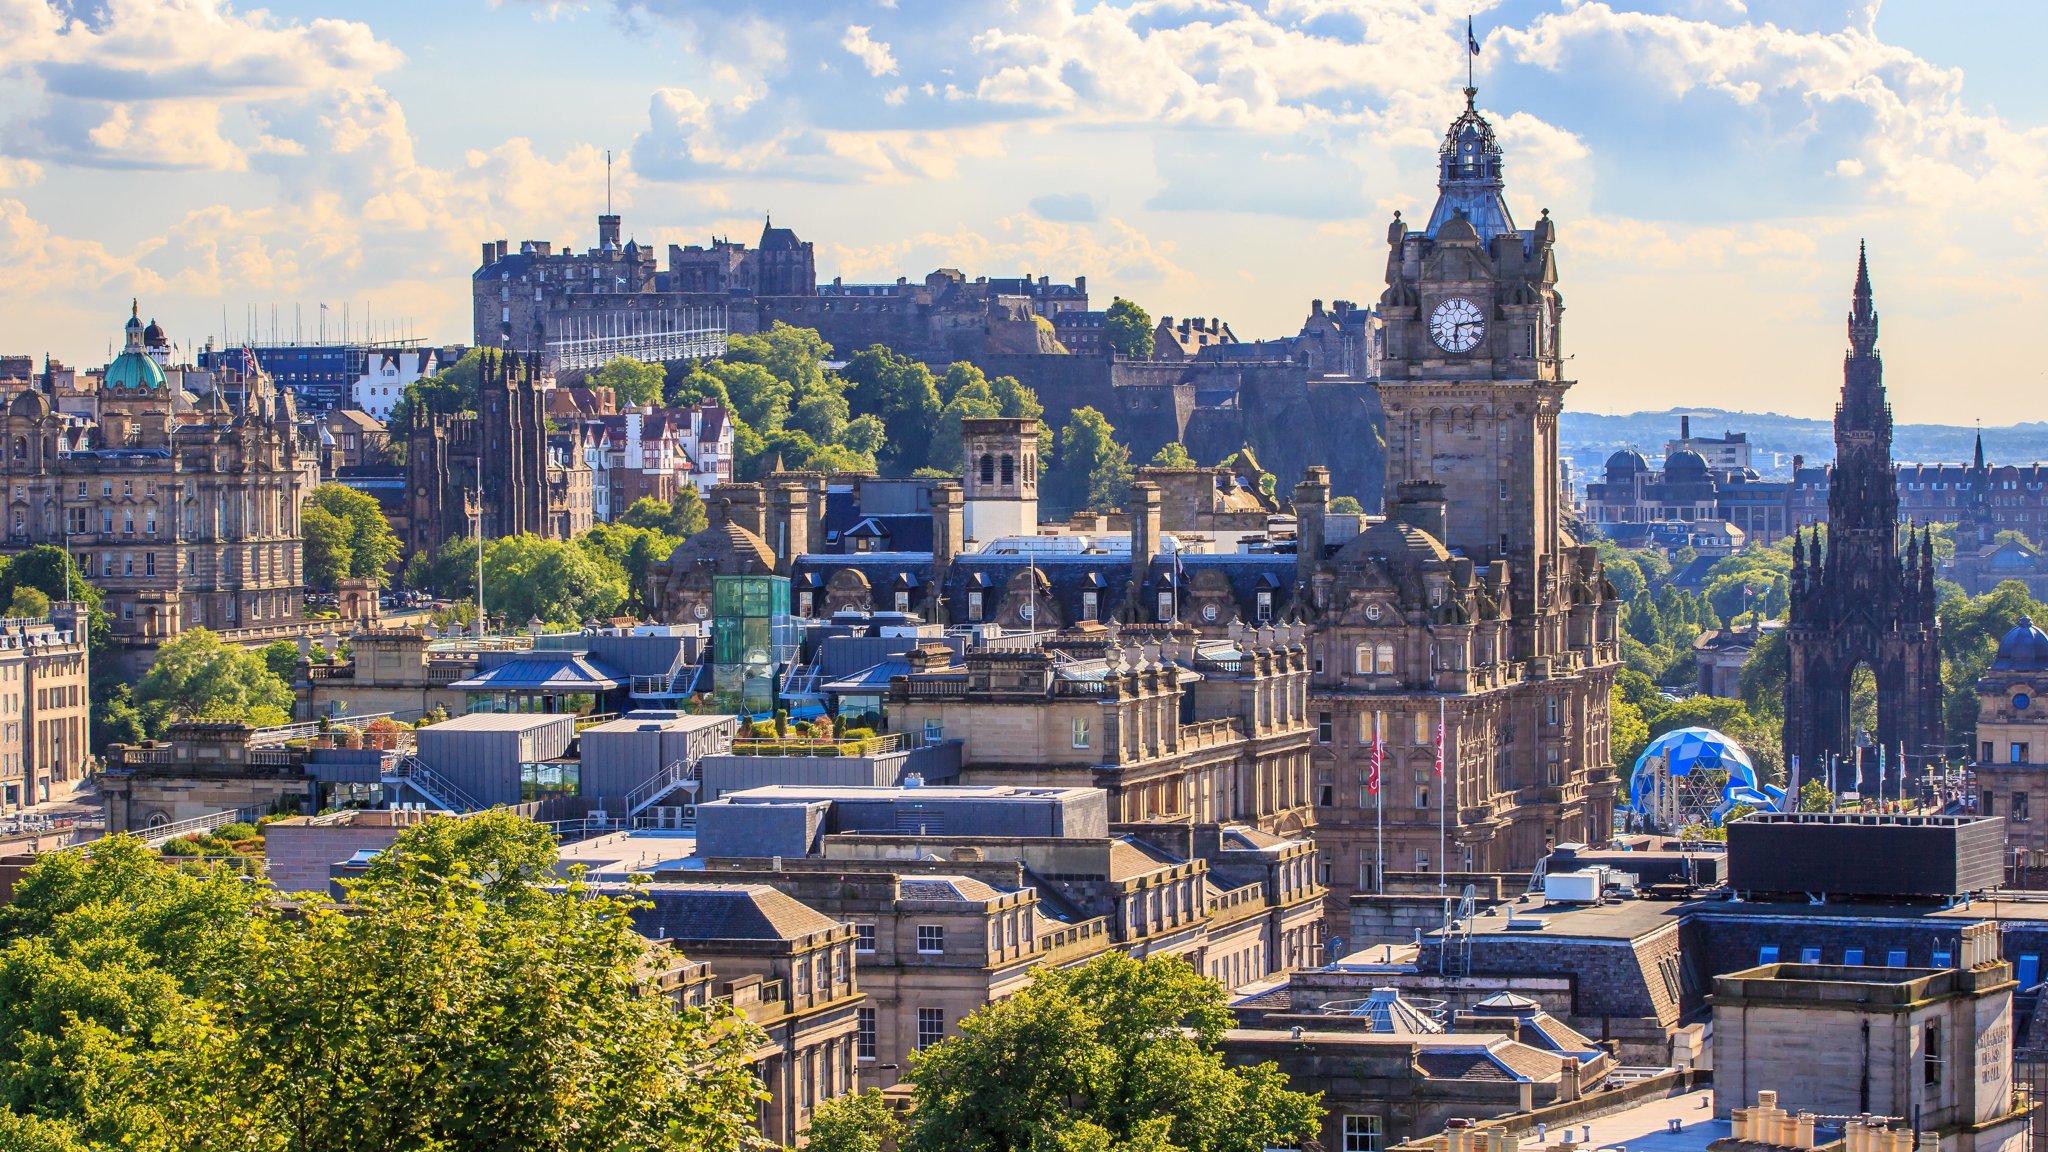 Du lịch Edinburgh, United Kingdom (Vương Quốc Anh) 2023 kinh nghiệm, cẩm nang, blog, review mới nhất